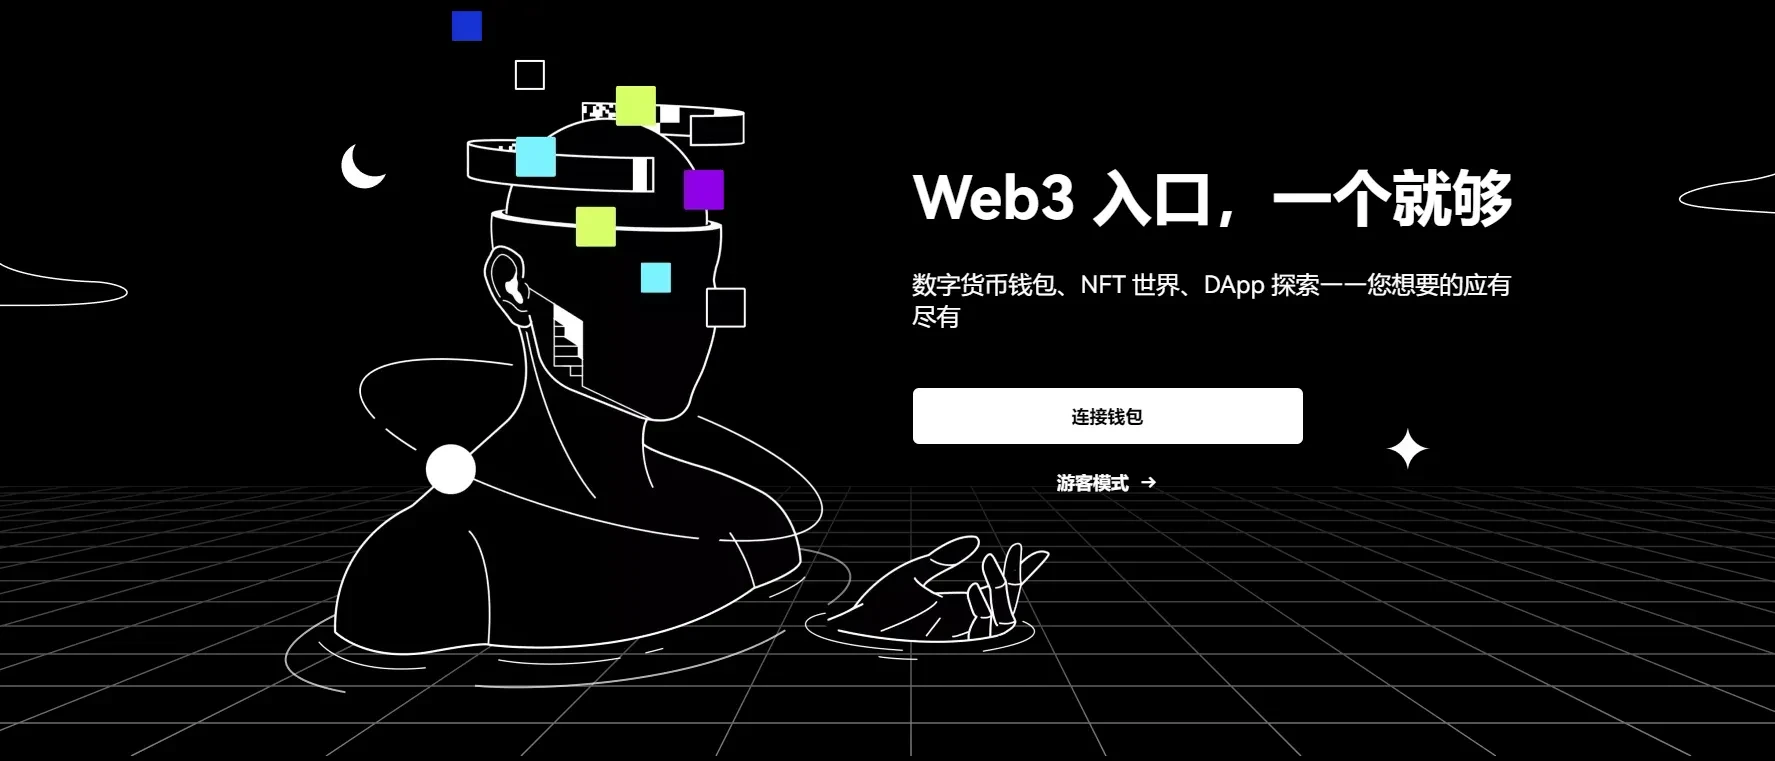 欧易Web3钱包是Web3入口